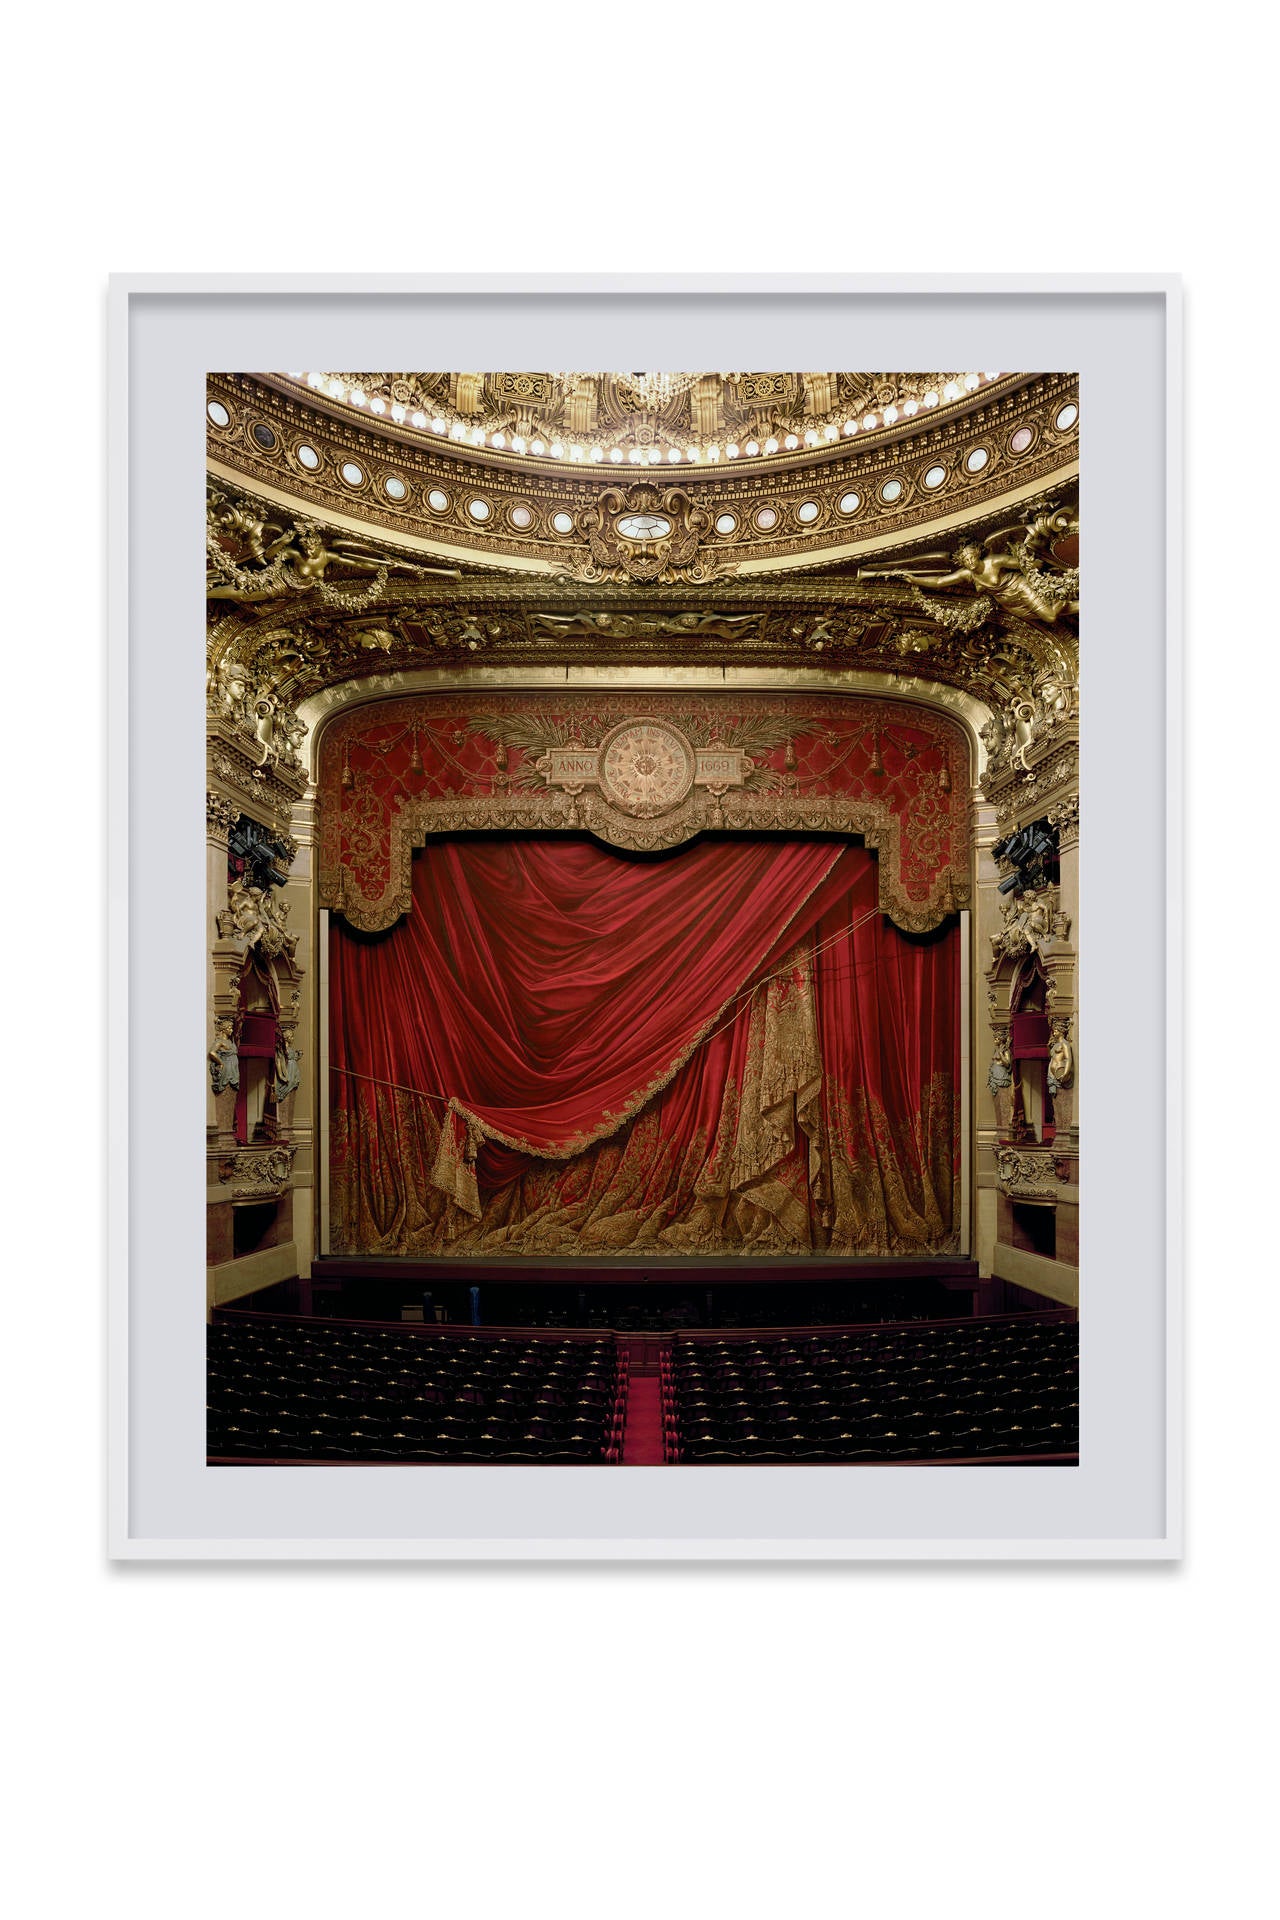 Curtain, Palais Garnier, Paris, France - Photograph by David Leventi